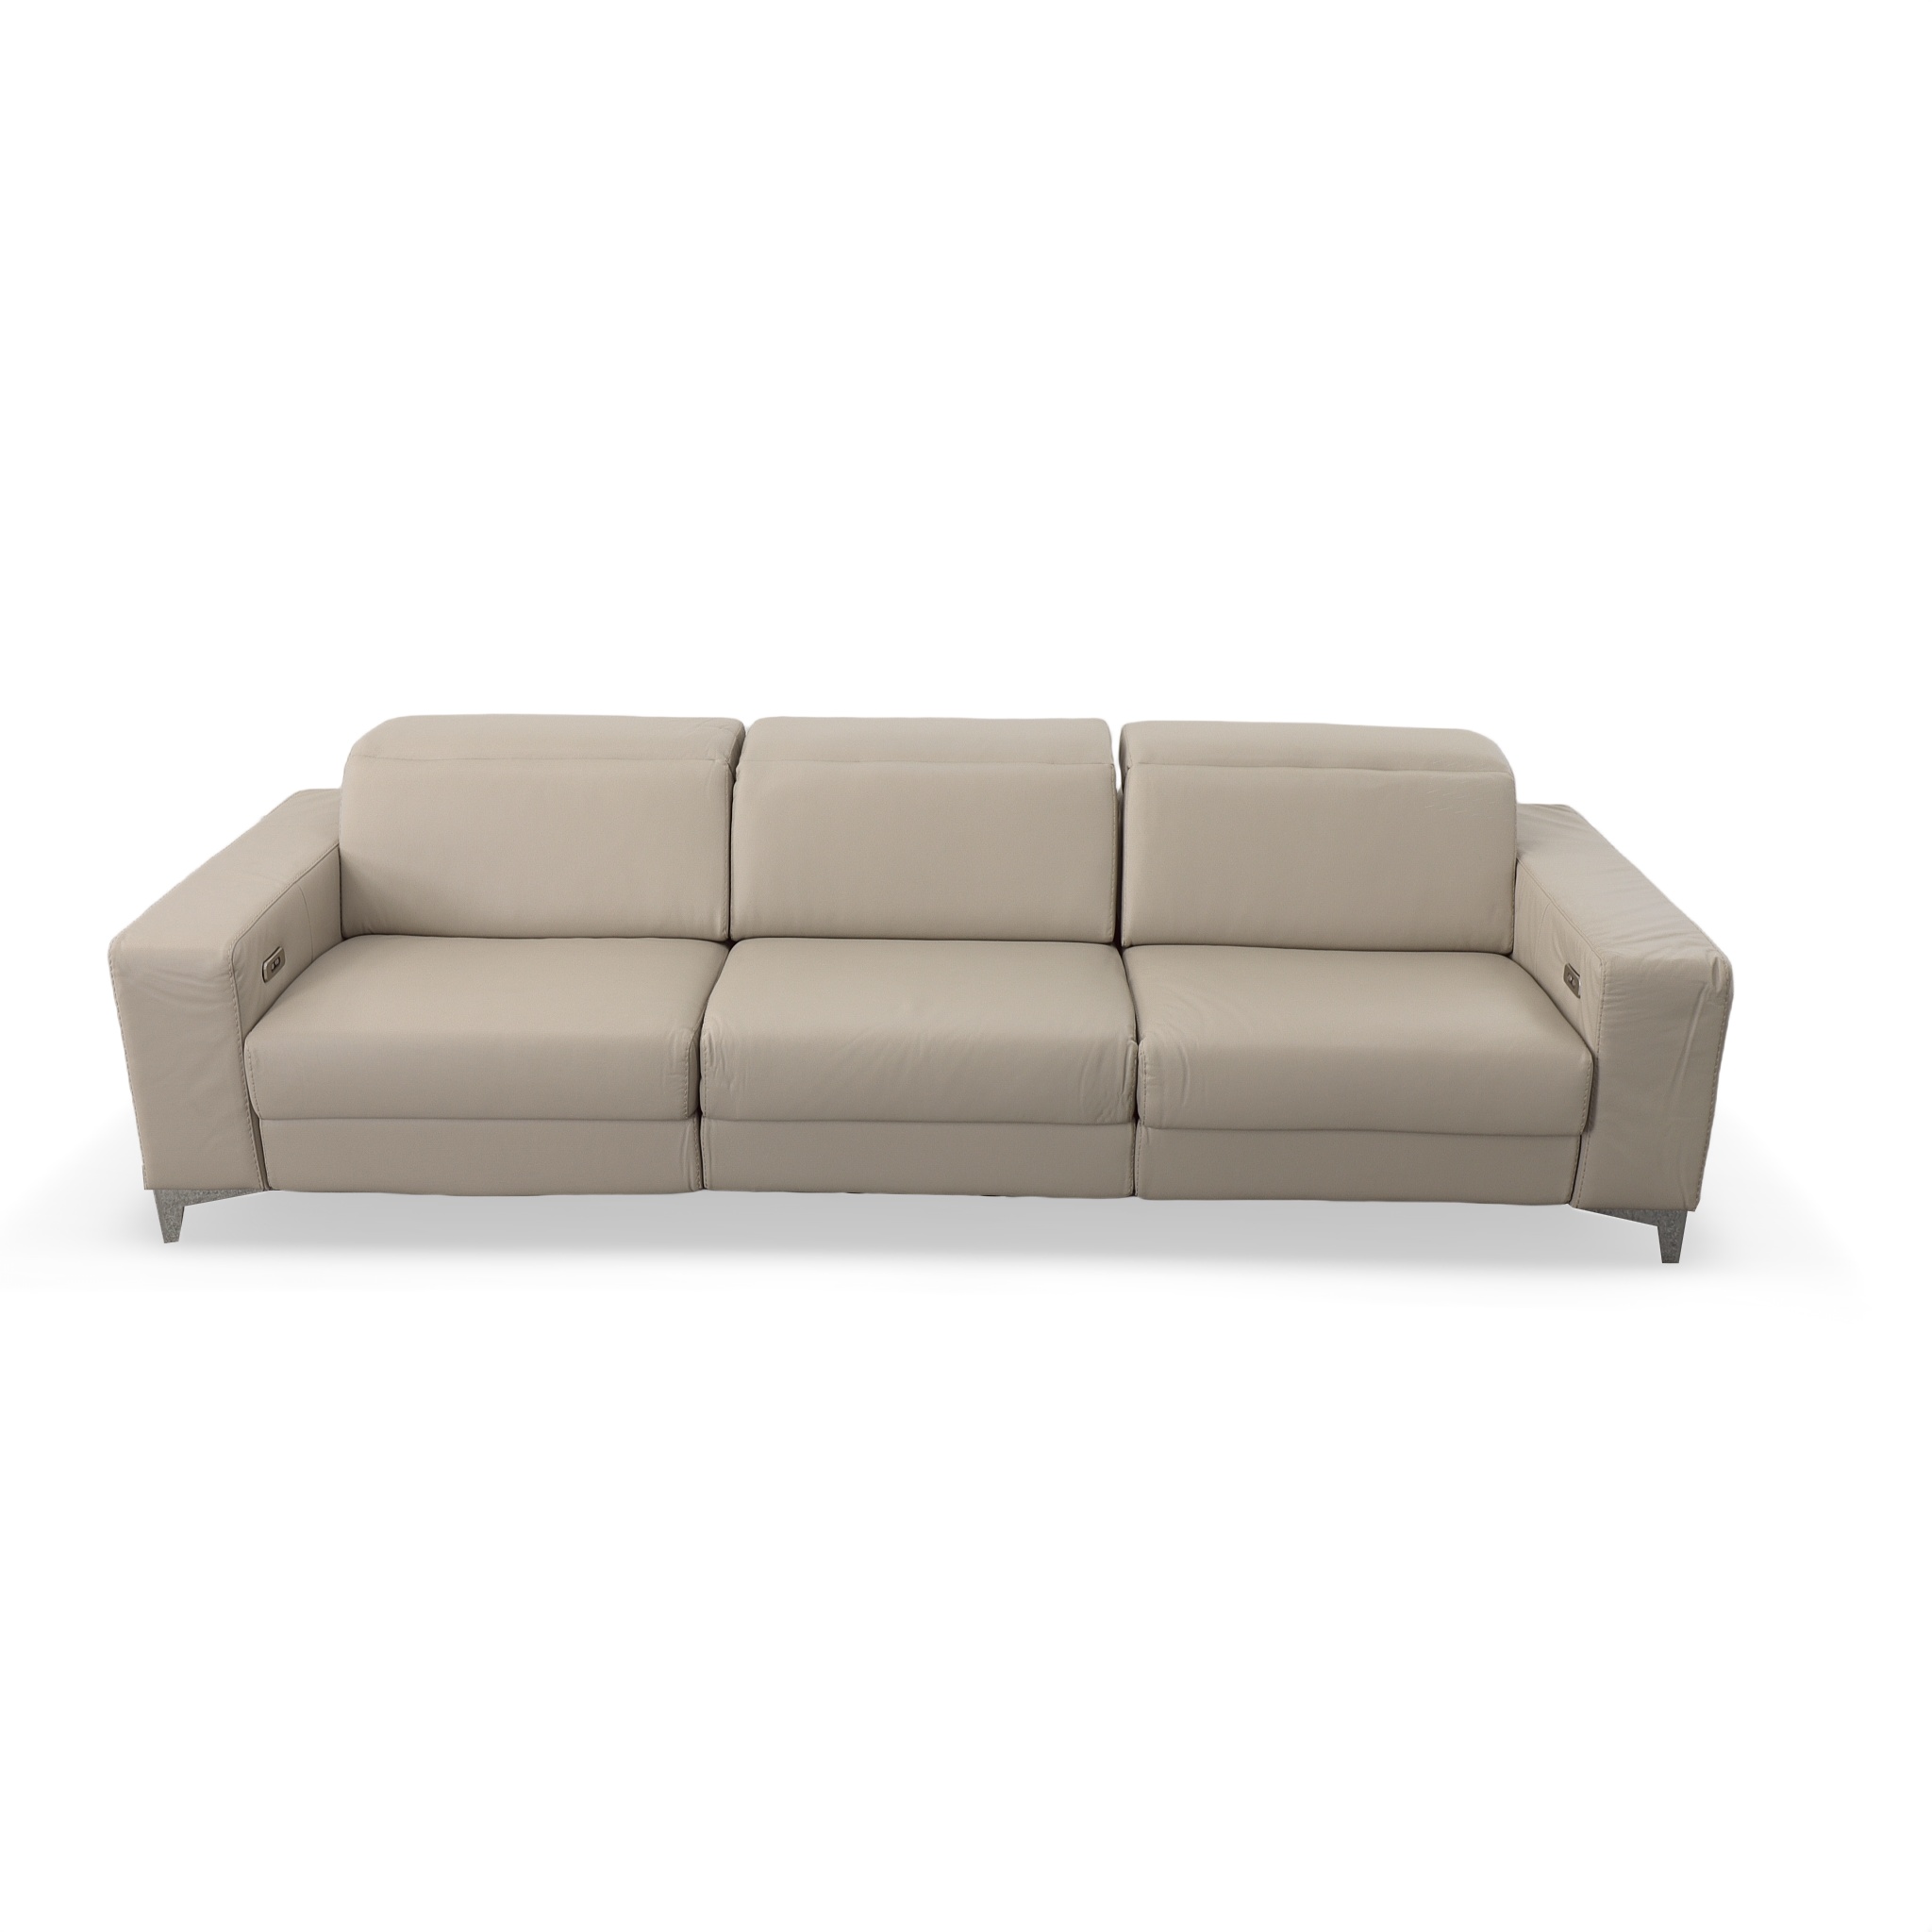 Sienna 3-piece Recliner Sofa